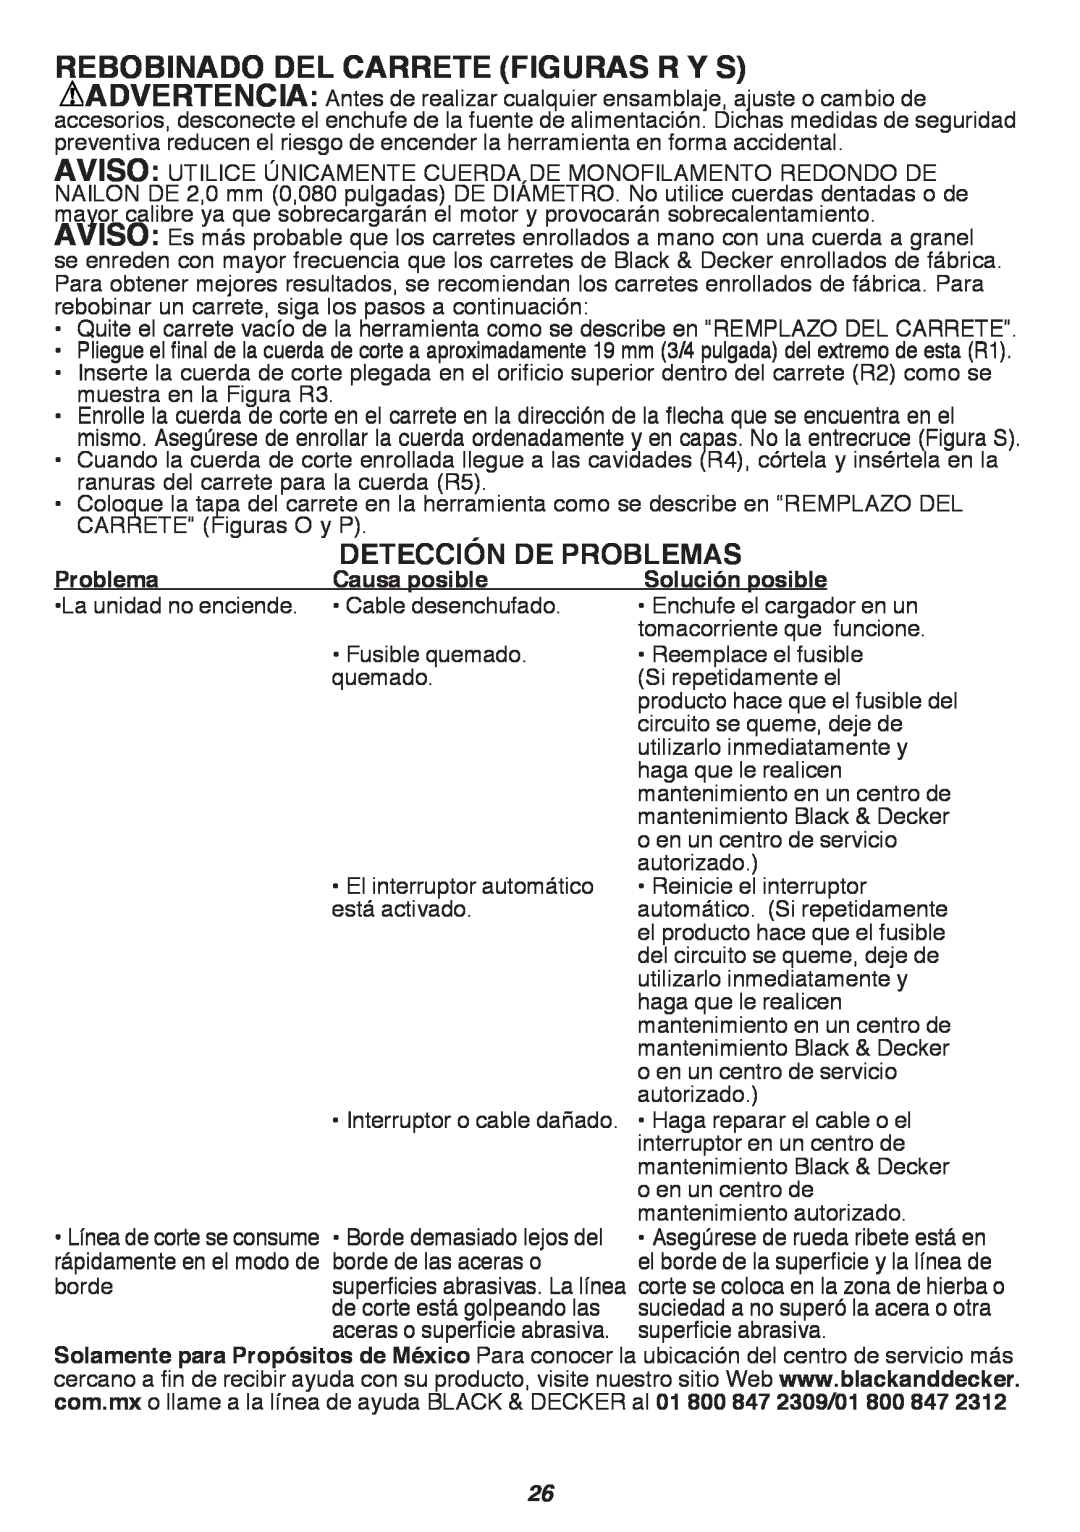 Black & Decker GH3000 instruction manual REBOBINADO DEL CARRETE figurAs R Y S, Detección de problemas 